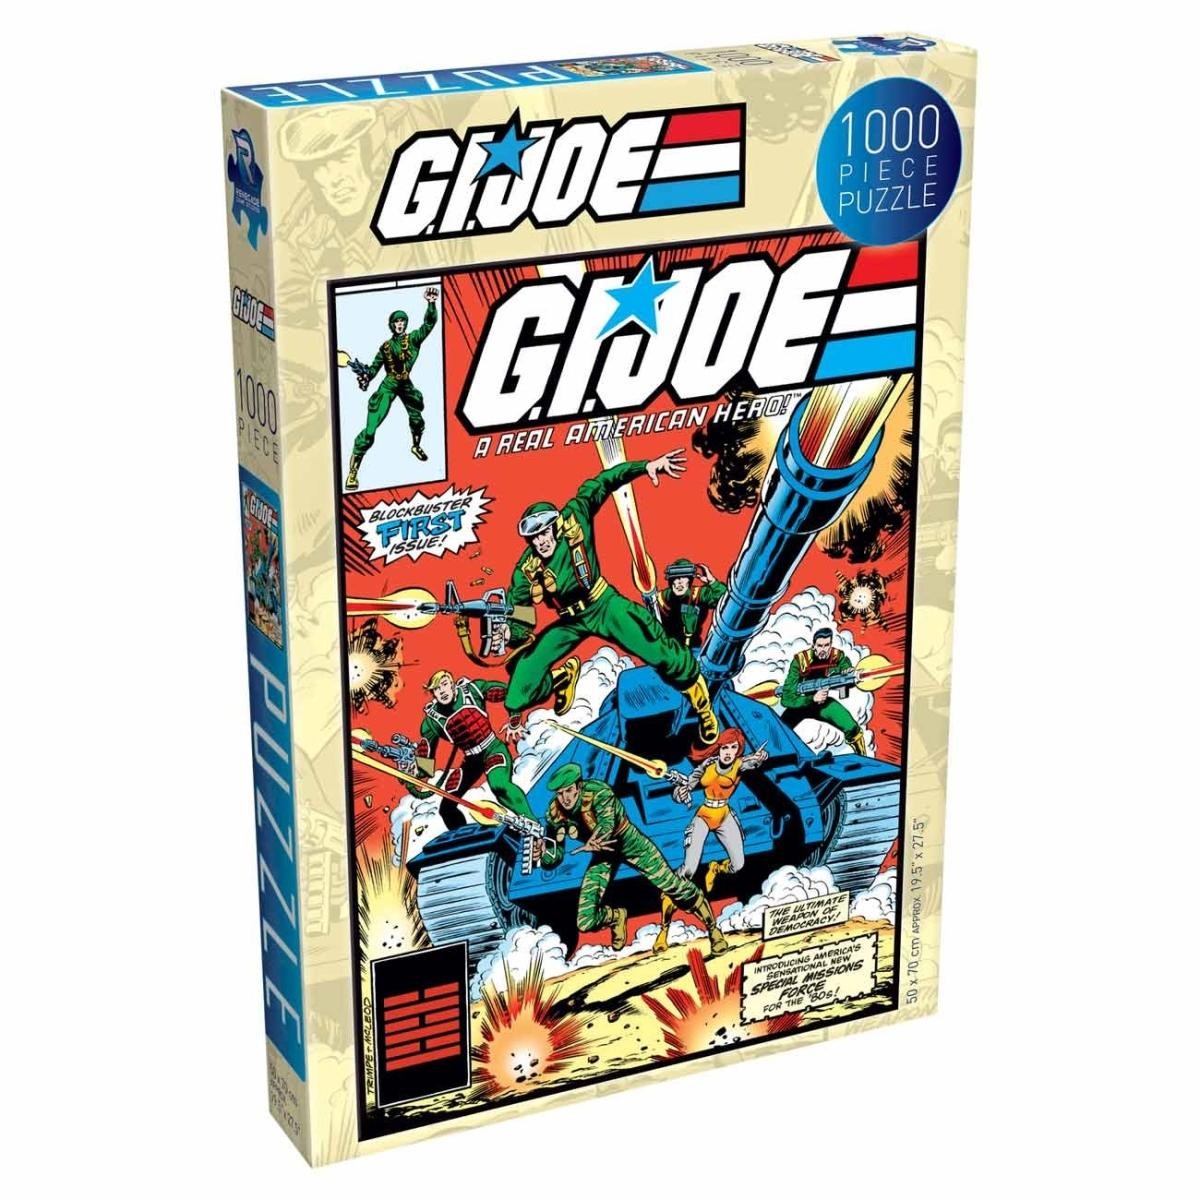 G.I. Joe Jigsaw Puzzle - 1000 Piece